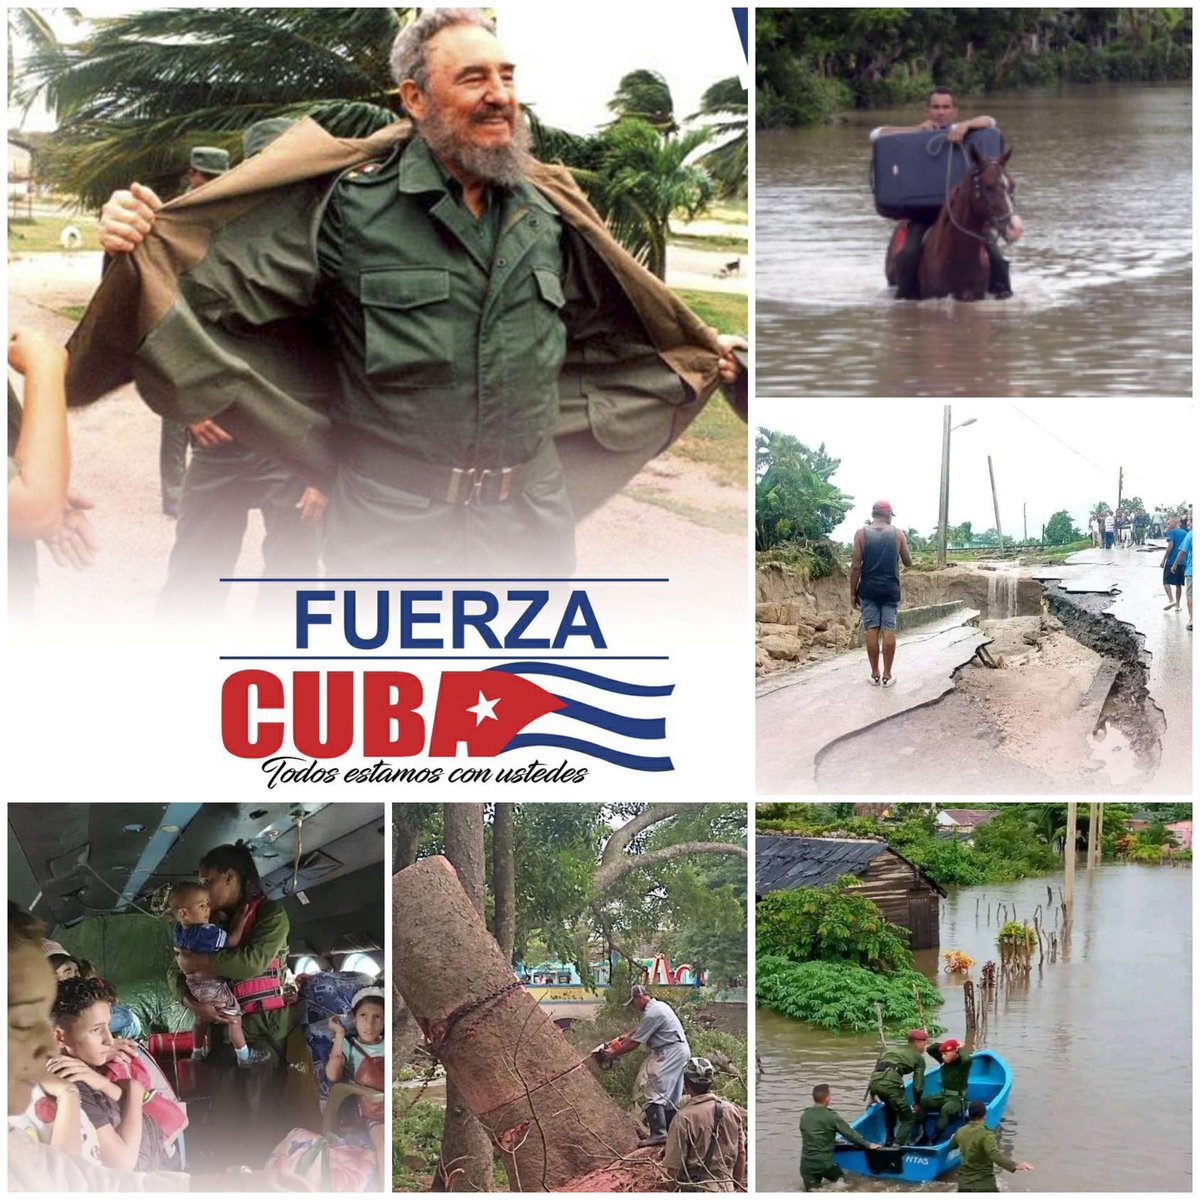 #FidelPorSiempre 'El golpe de la naturaleza fue contundente, pero también es alentador conocer que no habrá tregua ni descanso en nuestra lucha'. Con heroísmo y solidaridad, camino a la etapa de recuperación. #FuerzaCuba 🇨🇺